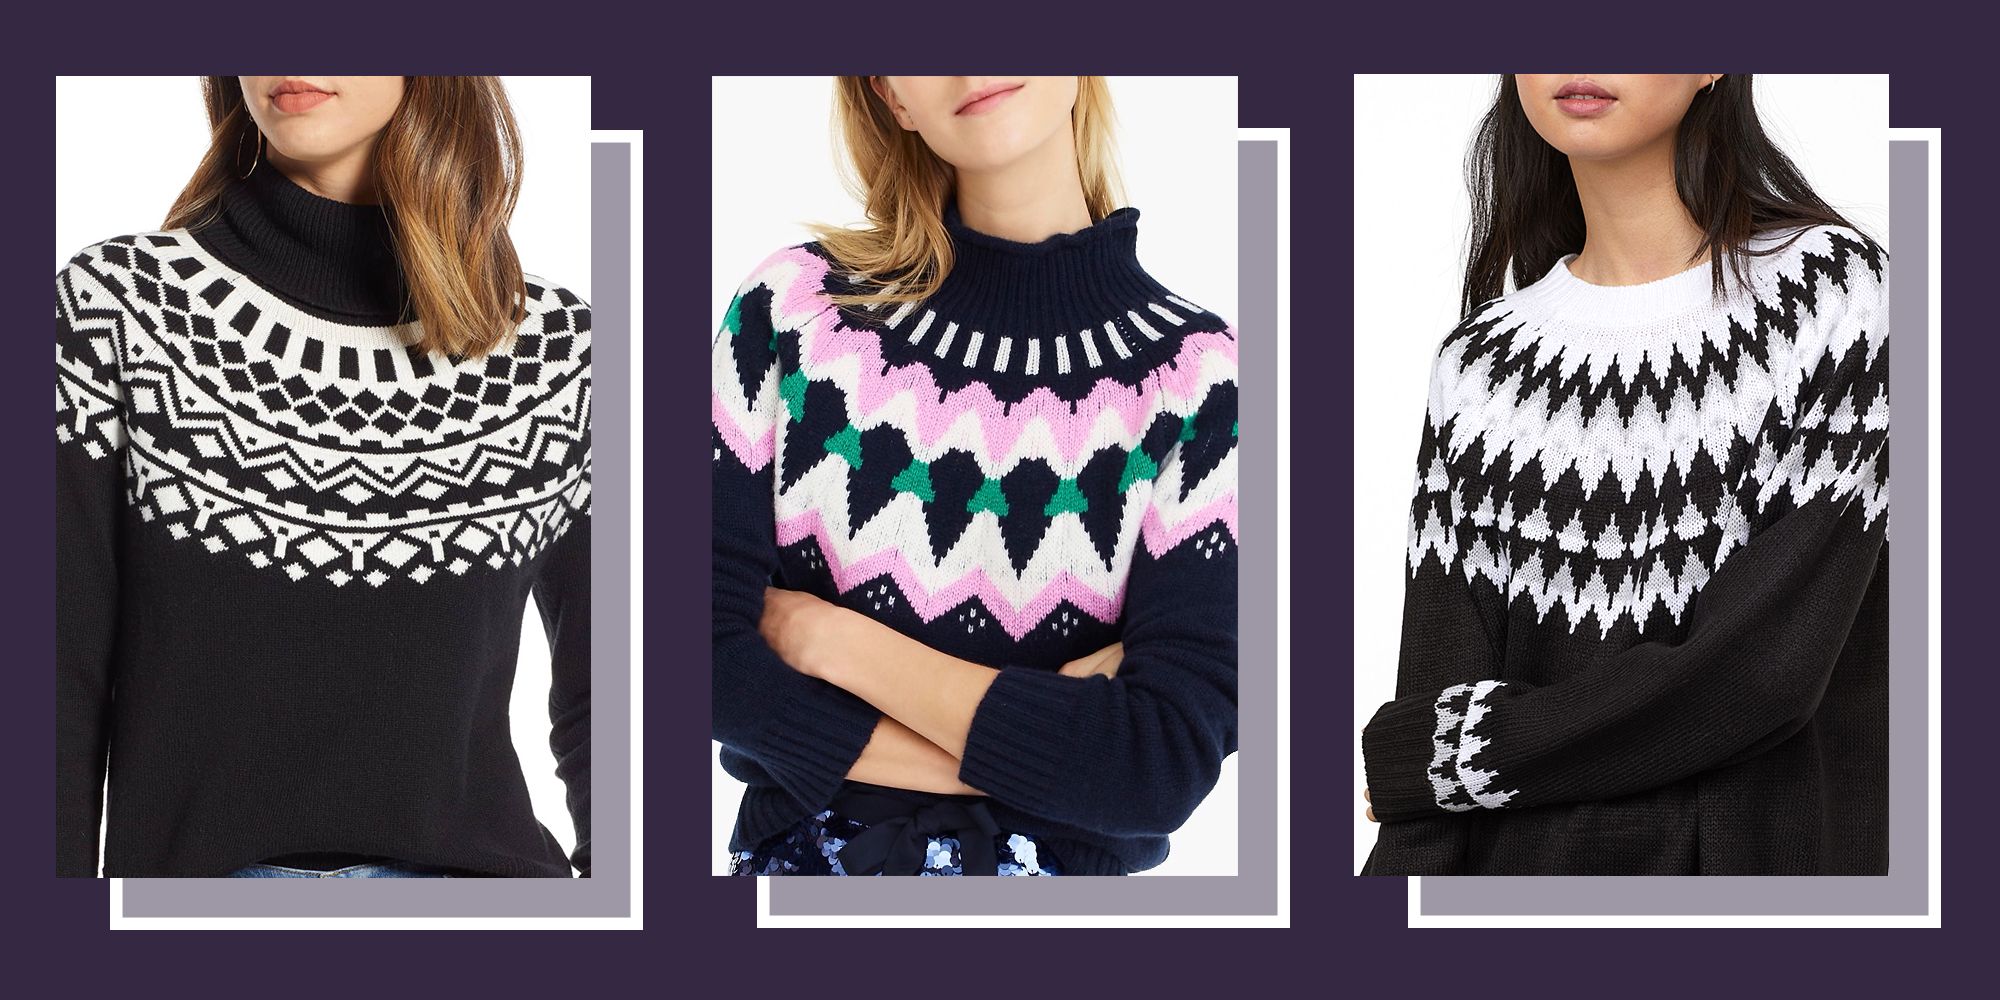 women's cotton fair isle sweater